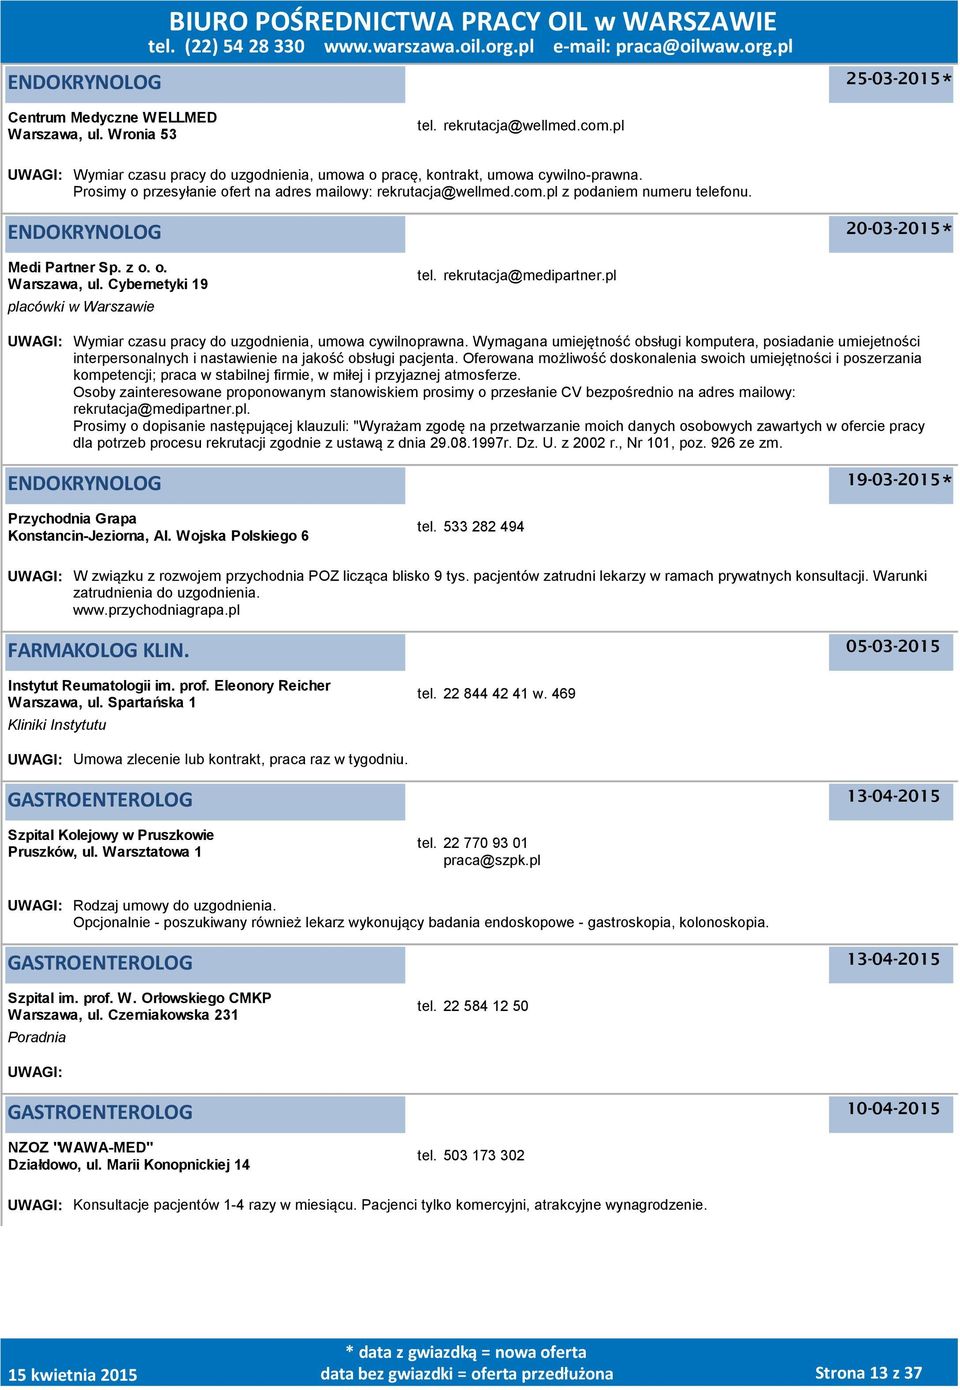 ENDOKRYNOLOG 20-03-2015 Medi Partner Sp. z o. o., ul. Cybernetyki 19 placówki w Warszawie tel. rekrutacja@medipartner.pl UWAGI: Wymiar czasu pracy do uzgodnienia, umowa cywilnoprawna.